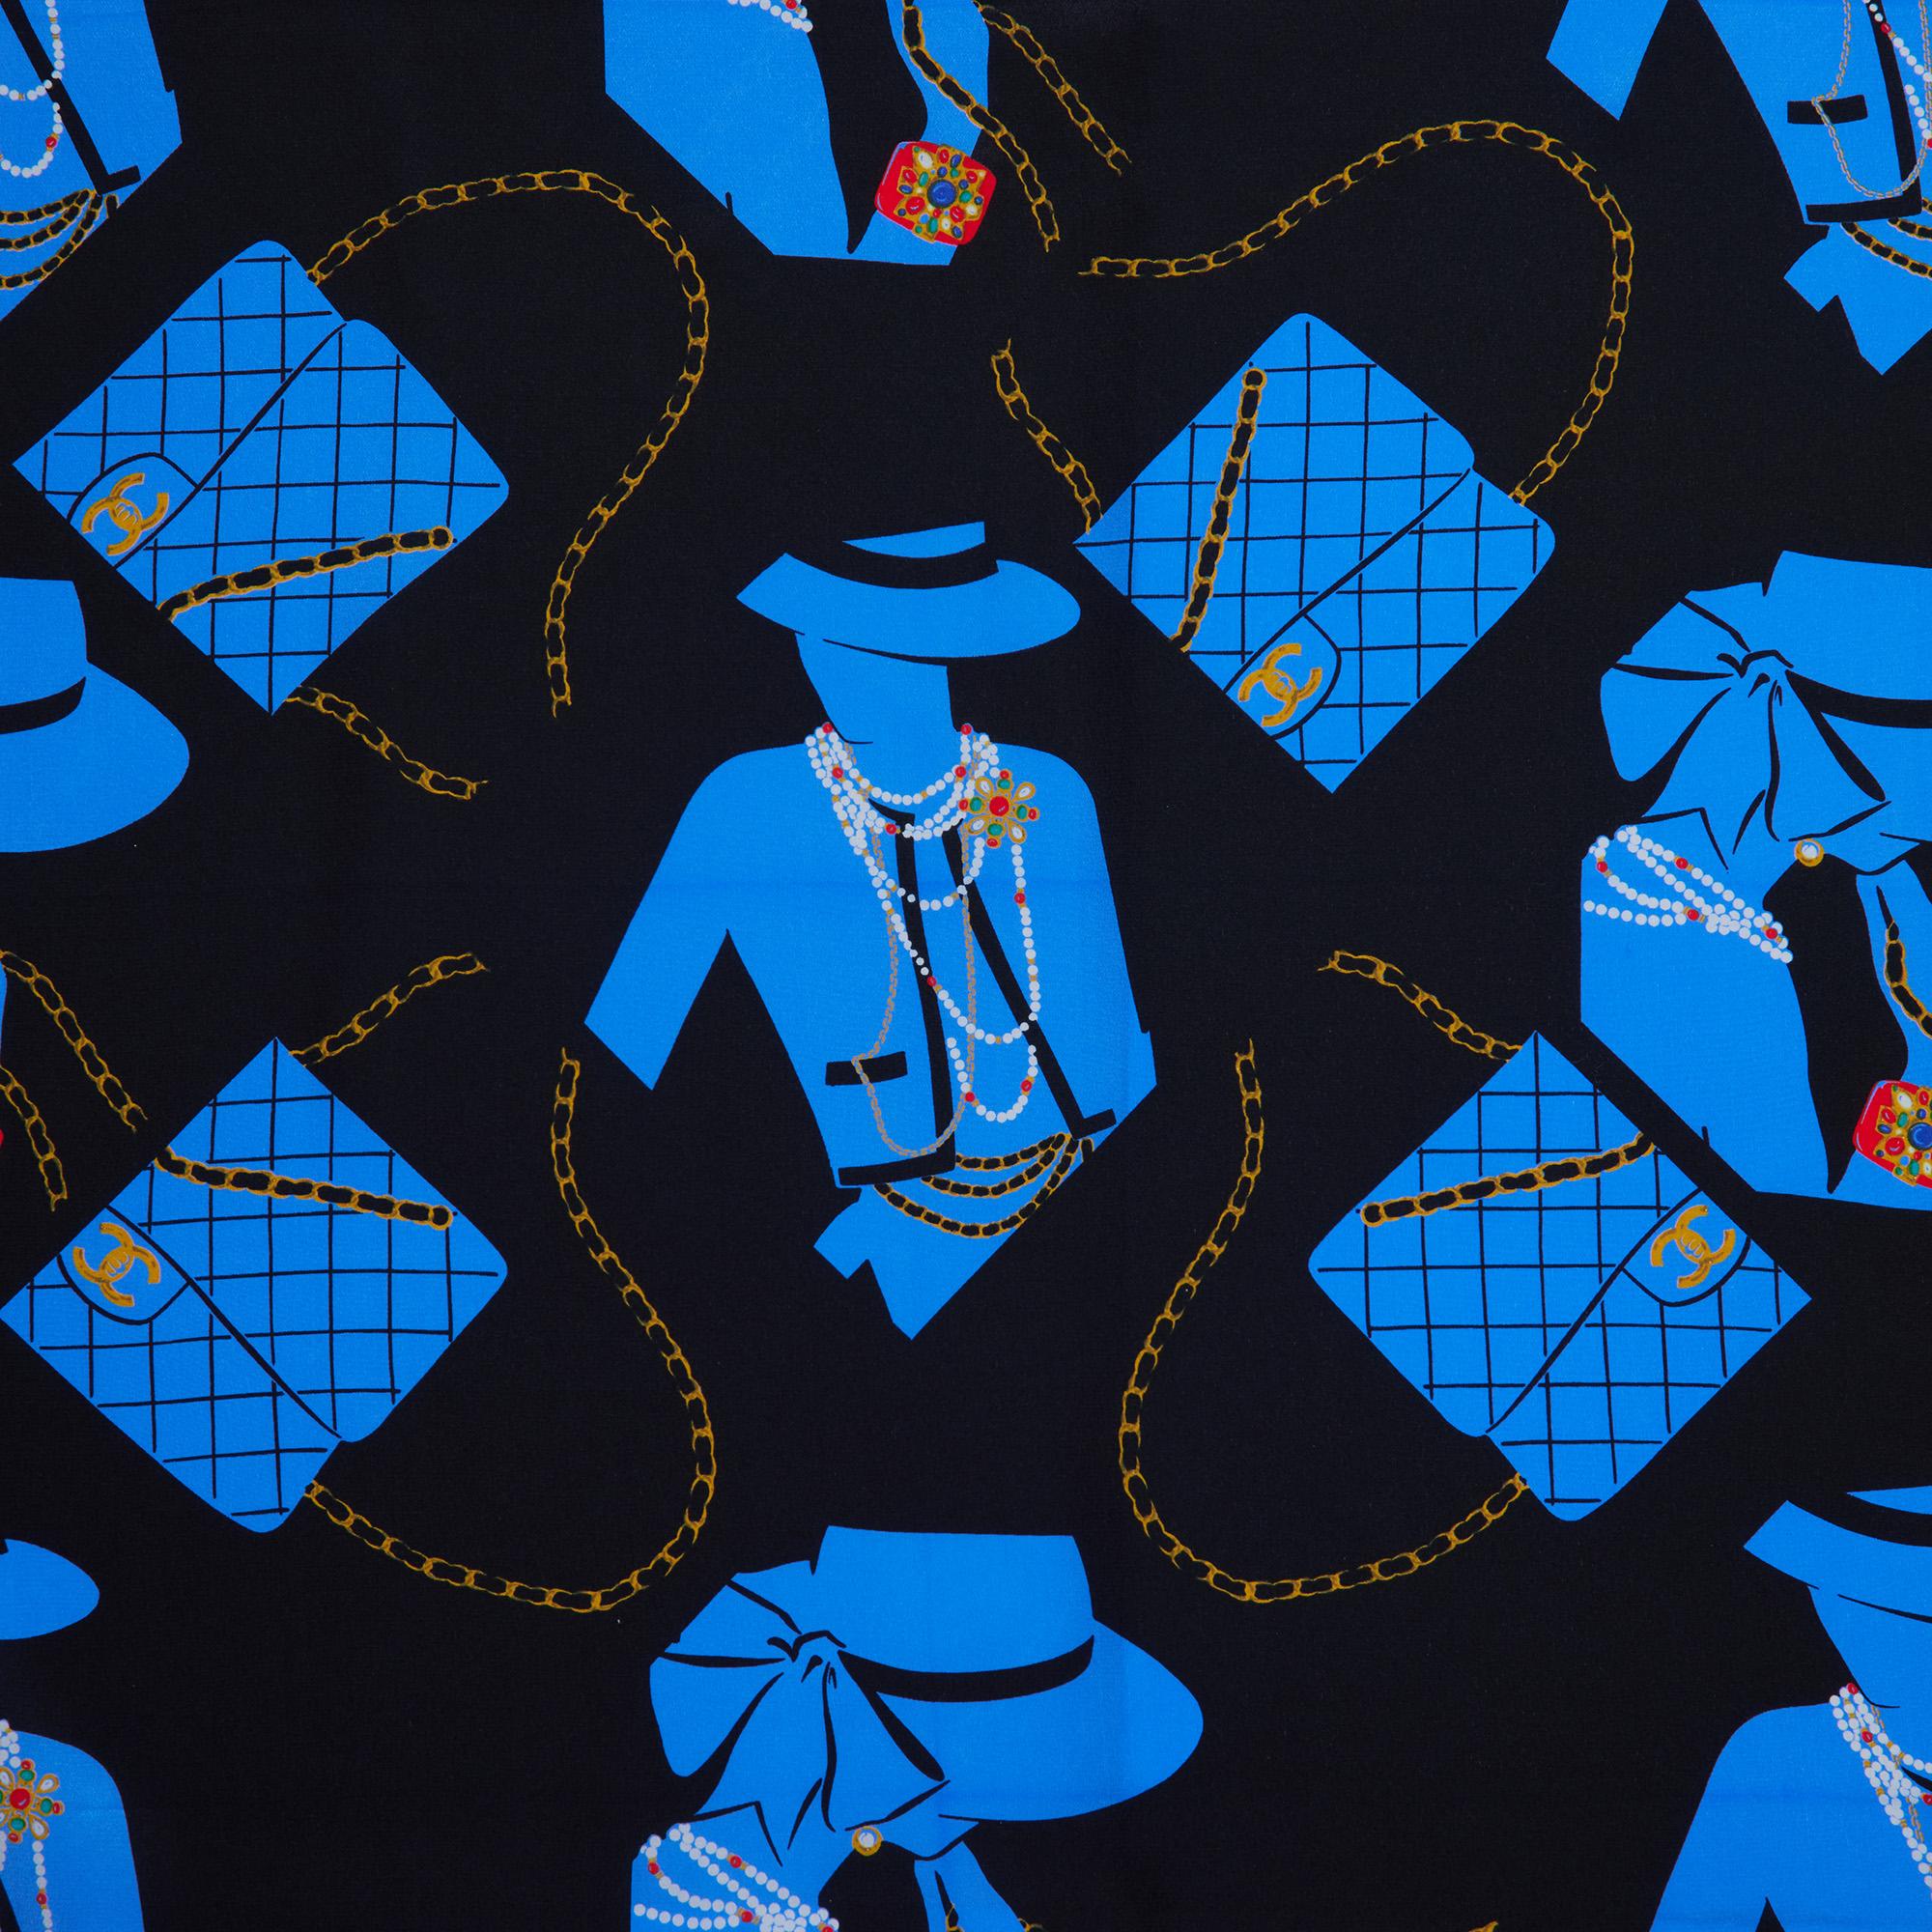 MARQUE	Chanel
MODÈLE	Écharpe
AGE	1990
GENDER	Femmes
MATERIAL(S)	Soie
COULEUR	Multicolore
COULEUR DE LA MARQUE	Noir, bleu
HAUTEUR	90cm
LARGEUR	90cm
DÉTAILS DE L'AUTHENTICITÉ	(Fabriqué en Italie)

Détails du produit
L'extérieur est en excellent état